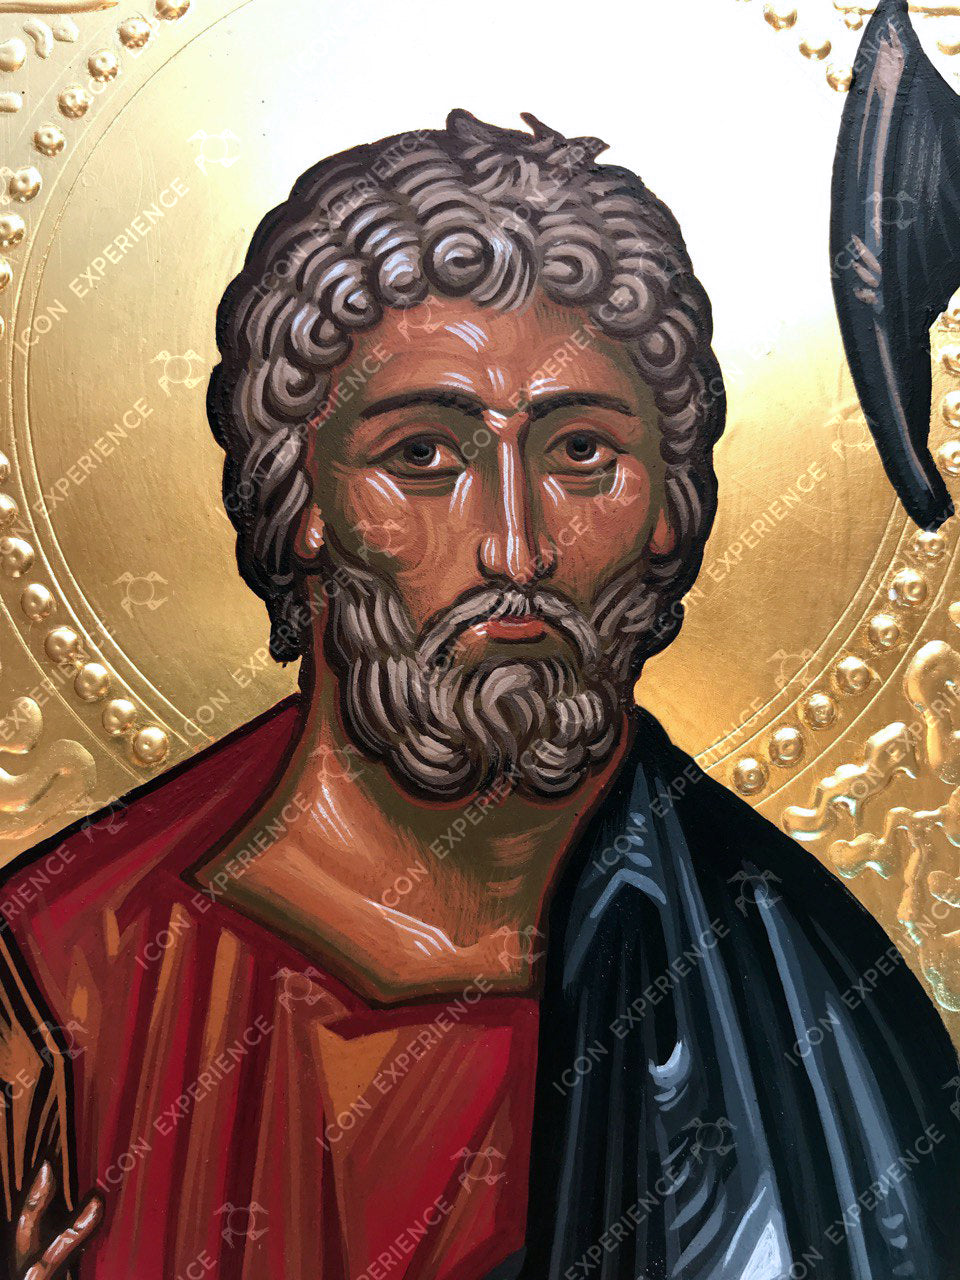 Saint Matthew the Apostle